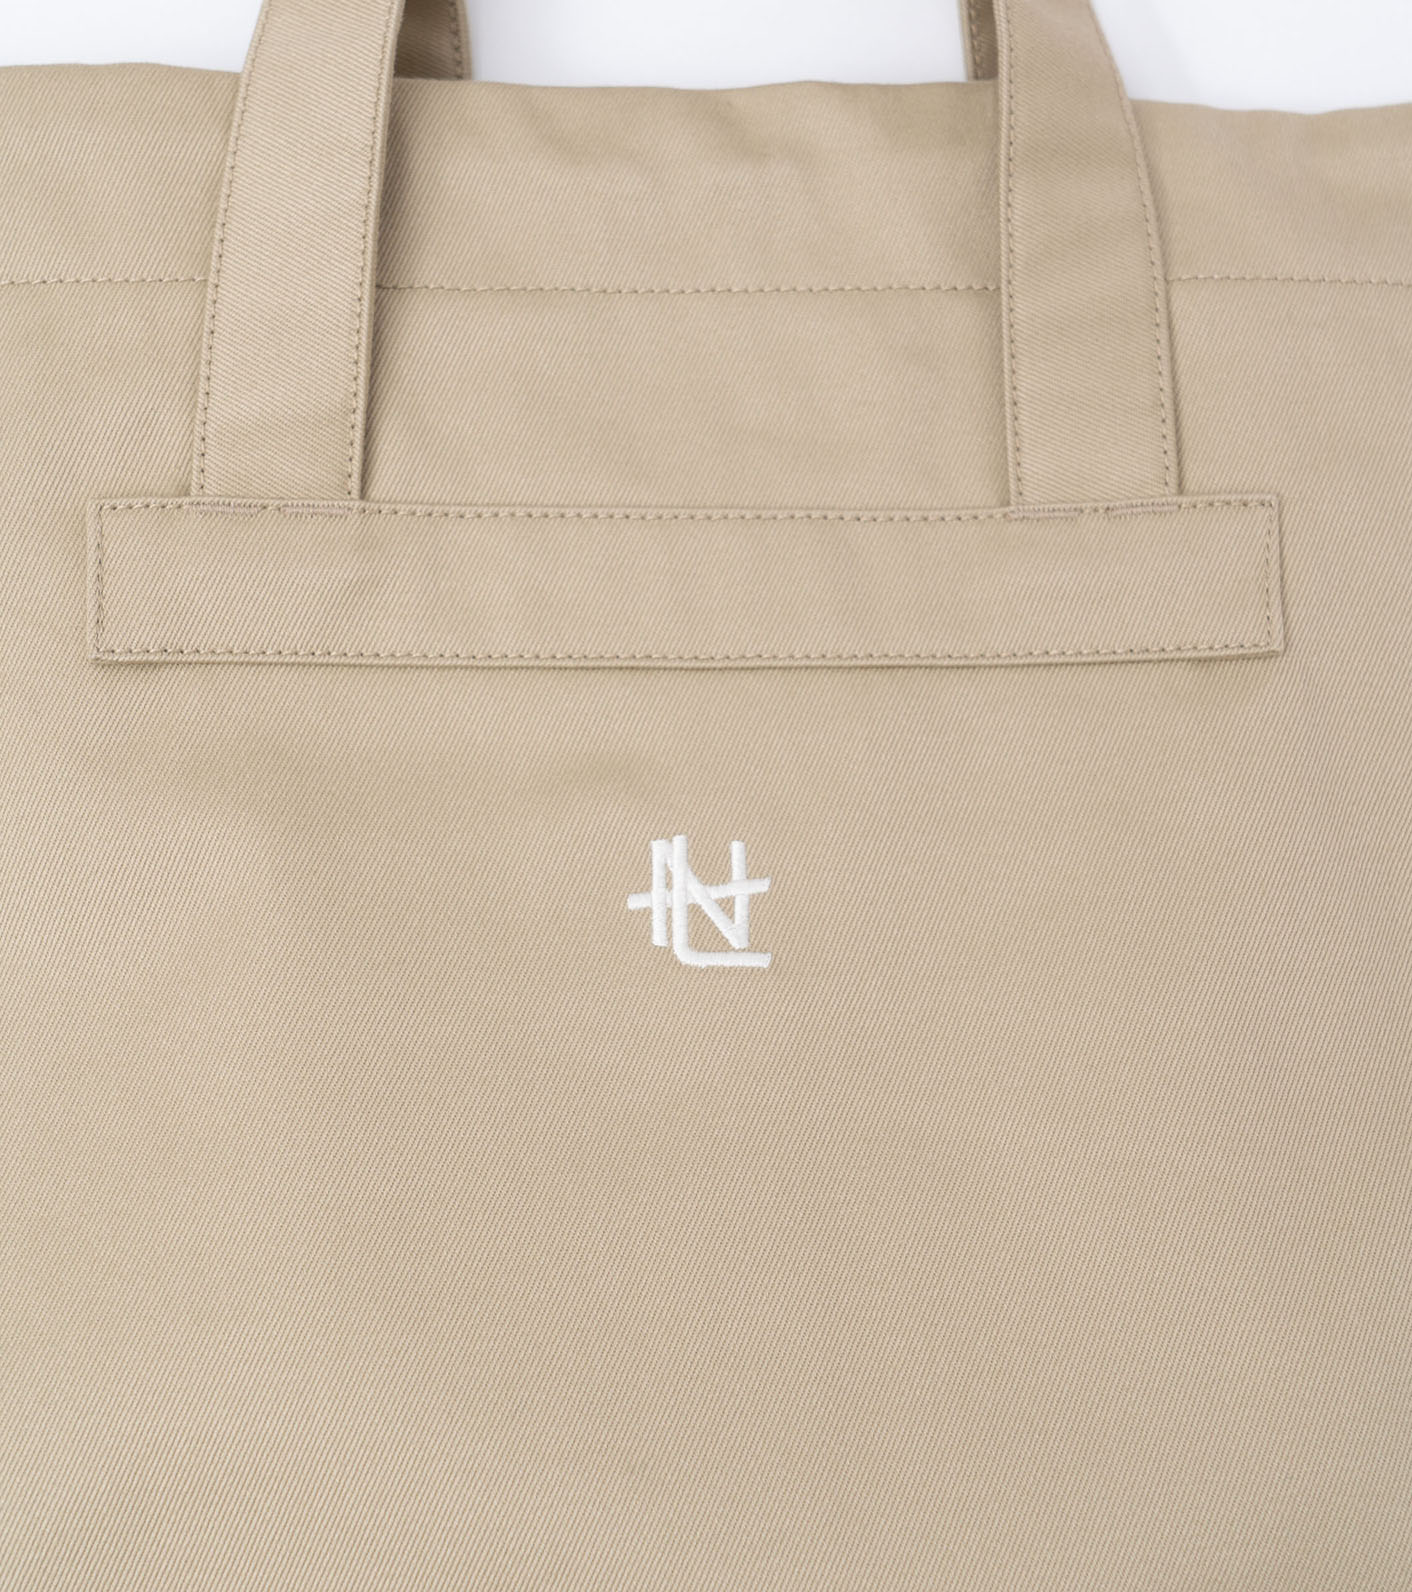 nanamica / Chino Tote Bag